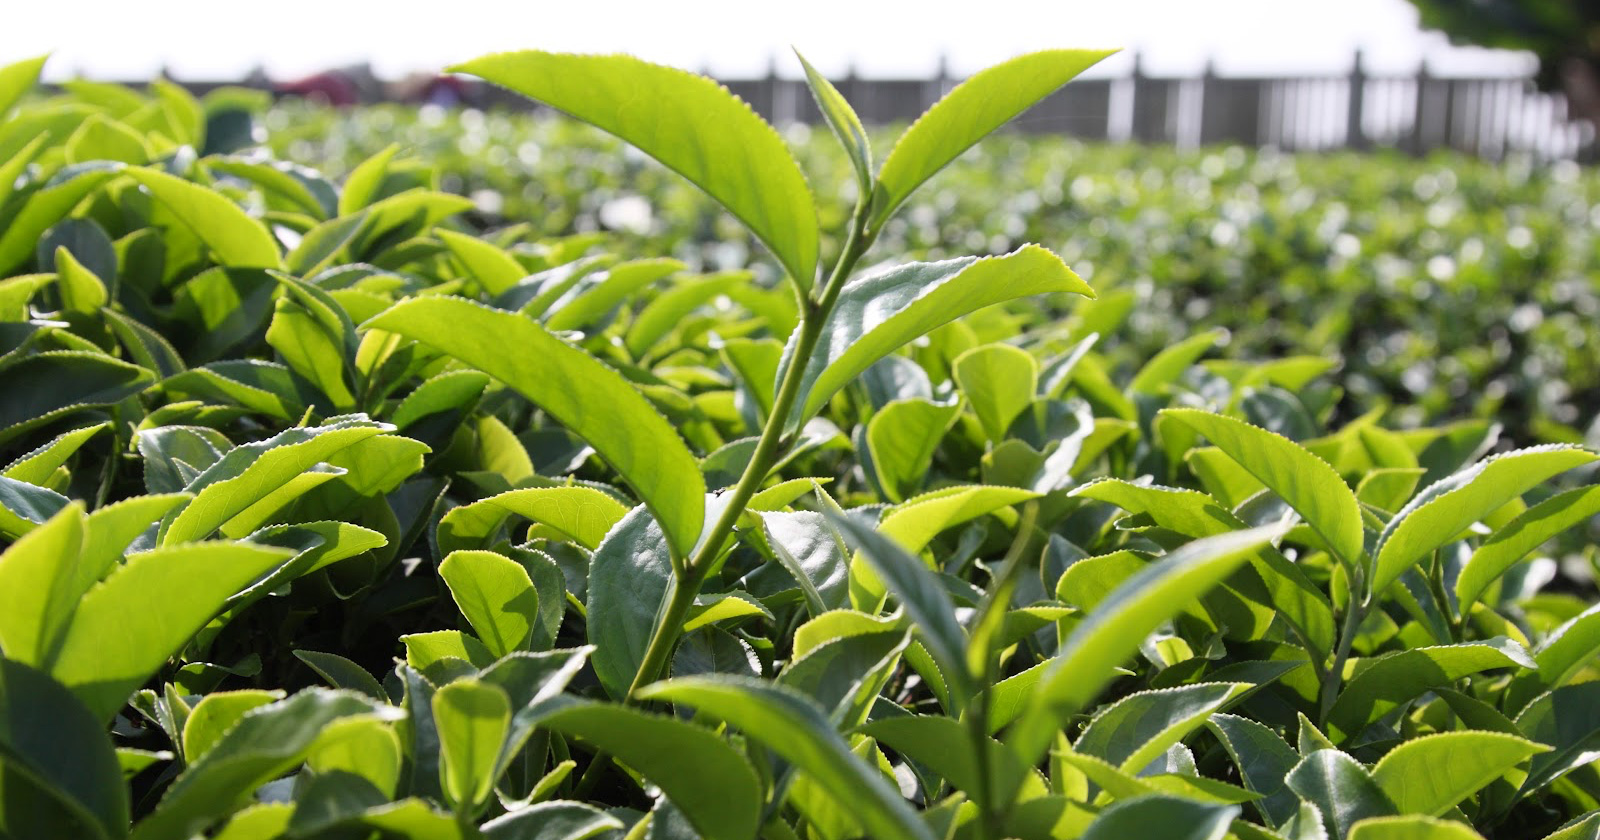 Mendirikan pabrik pengolahan teh hijau